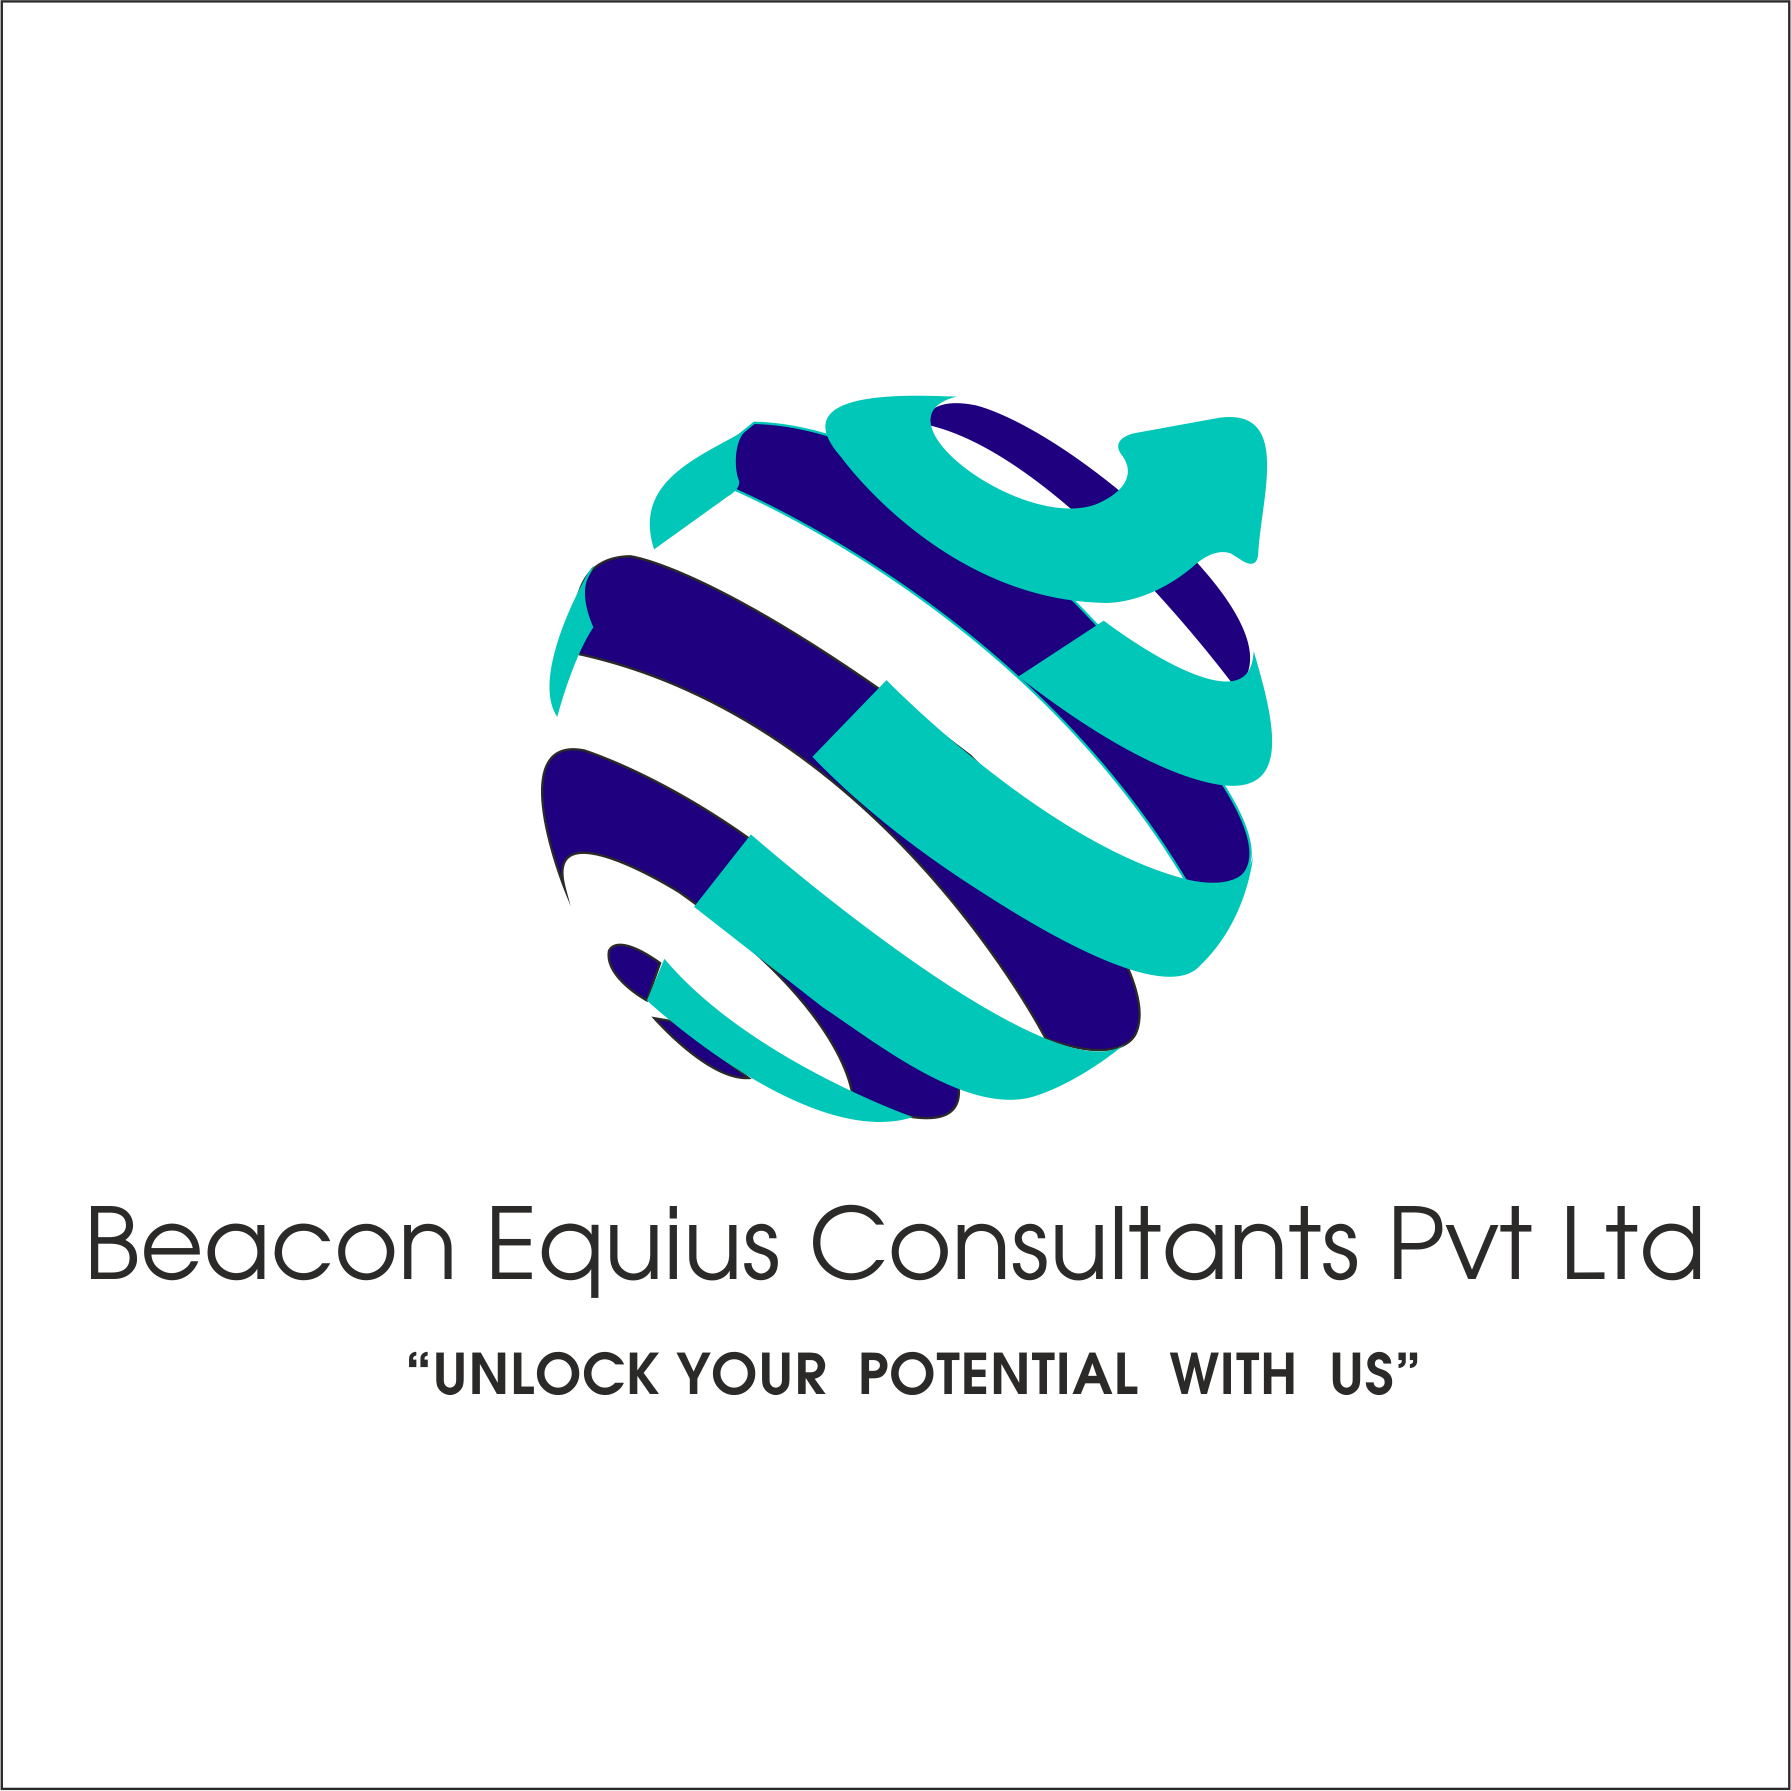 Beacon Equius